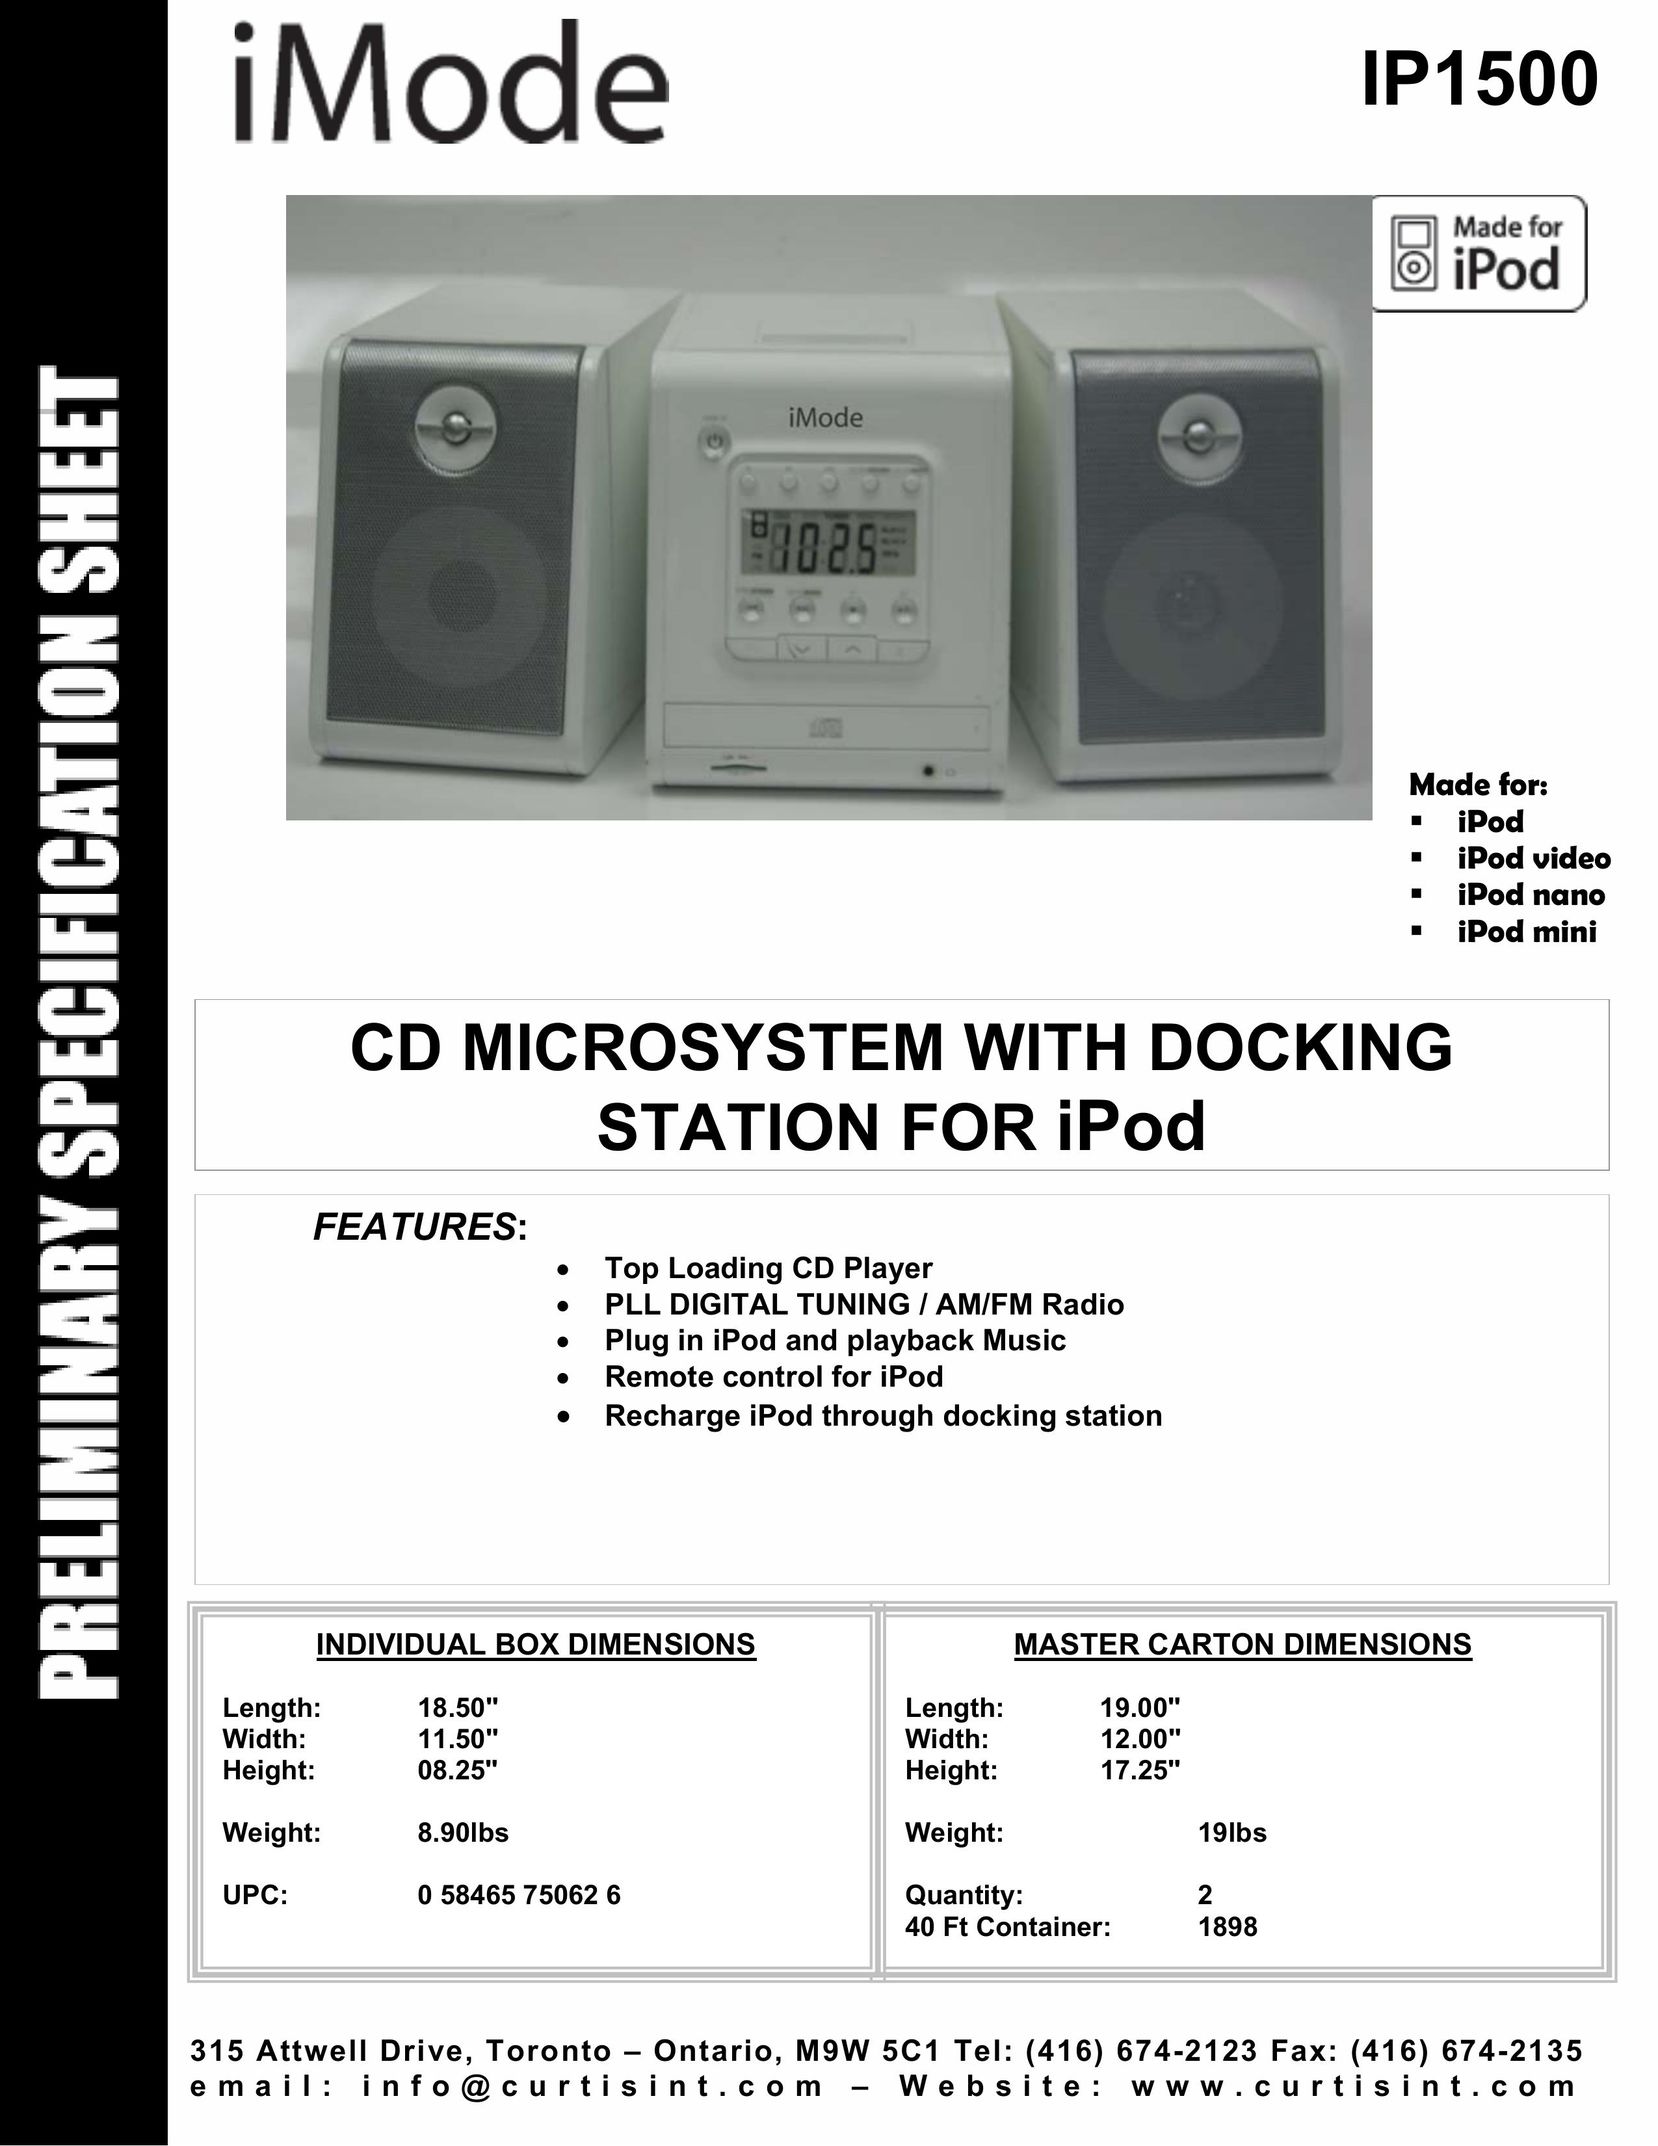 Curtis IP1500 MP3 Docking Station User Manual